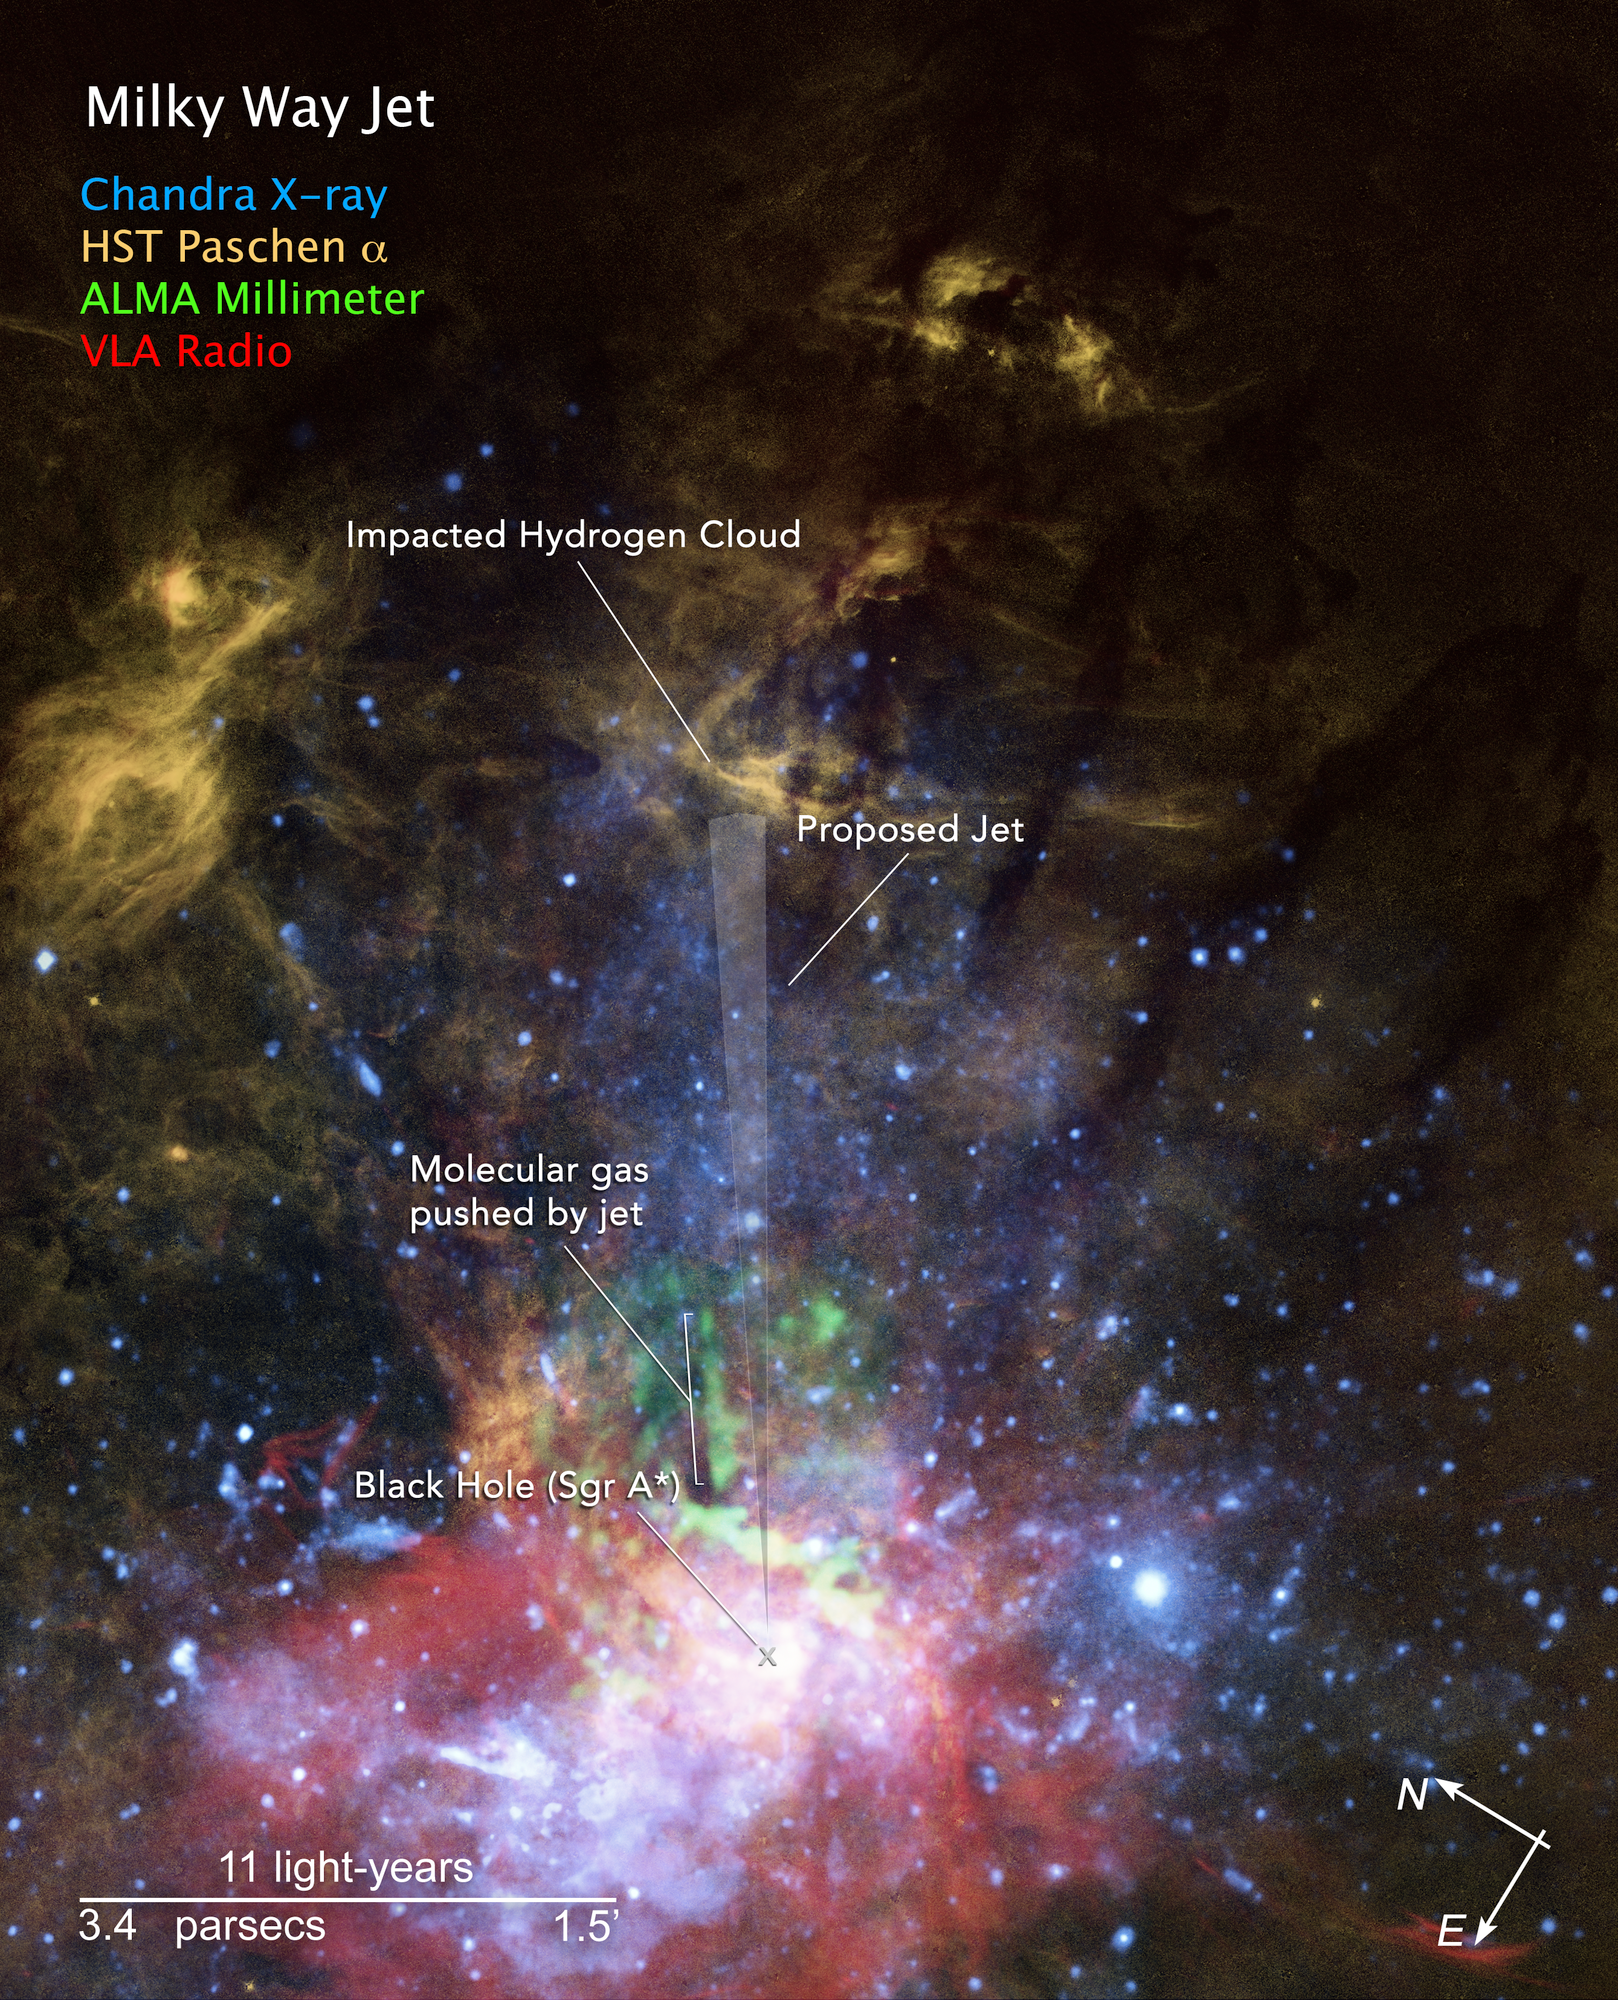 Zorientowany według kierunków i skali odległości obraz obłoków gazowych w pobliżu centrum Drogi Mlecznej z oznaczonymi głównymi strukturami świadczącymi o mini-dżecie. Pionowy i  przeźroczysty „złożony wachlarz” został dodany, aby pokazać prawdopodobną oś mini-dżetu wyrzuconego z supermasywnej czarnej dziury w centrum naszej Galaktyki około 2 tysiące lat temu. Źródło: NASA, ESA, and Gerald Cecil (UNC-Chapel Hill); Image Processing: Joseph DePasquale (STScI)